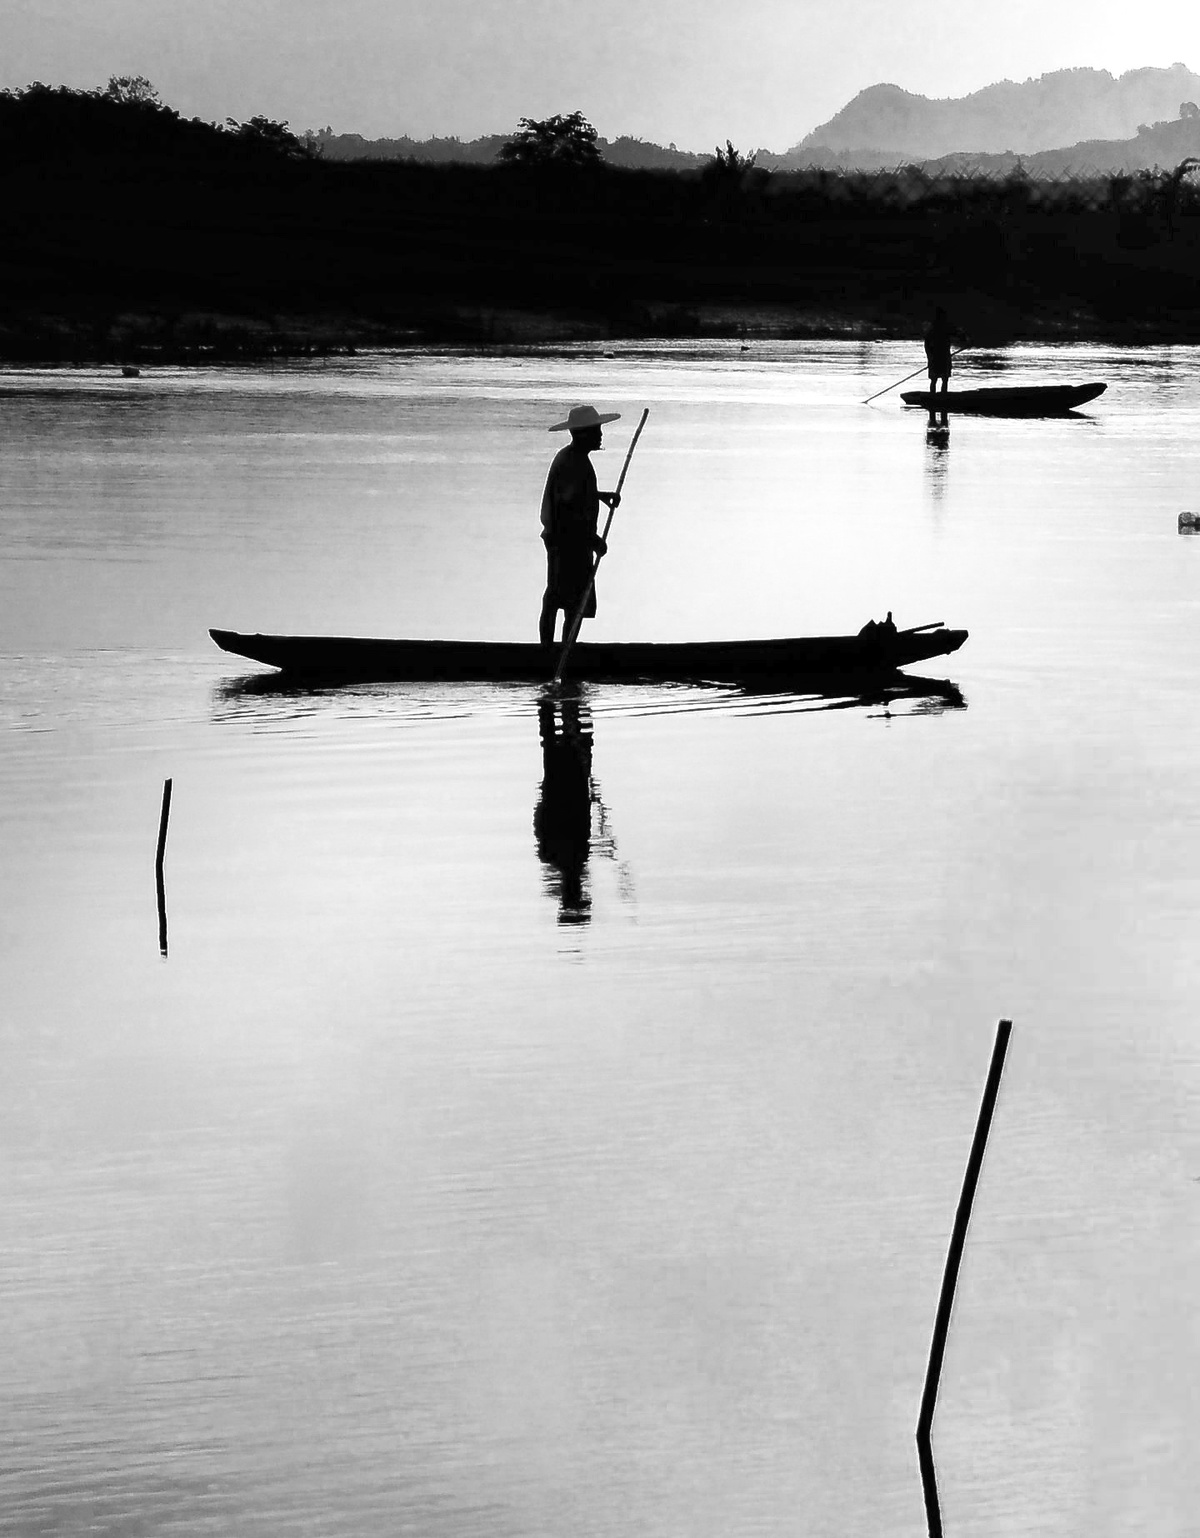 黑白照片中 一个人站在一艘小船上 身处水域 而远处另一个人在钓鱼。